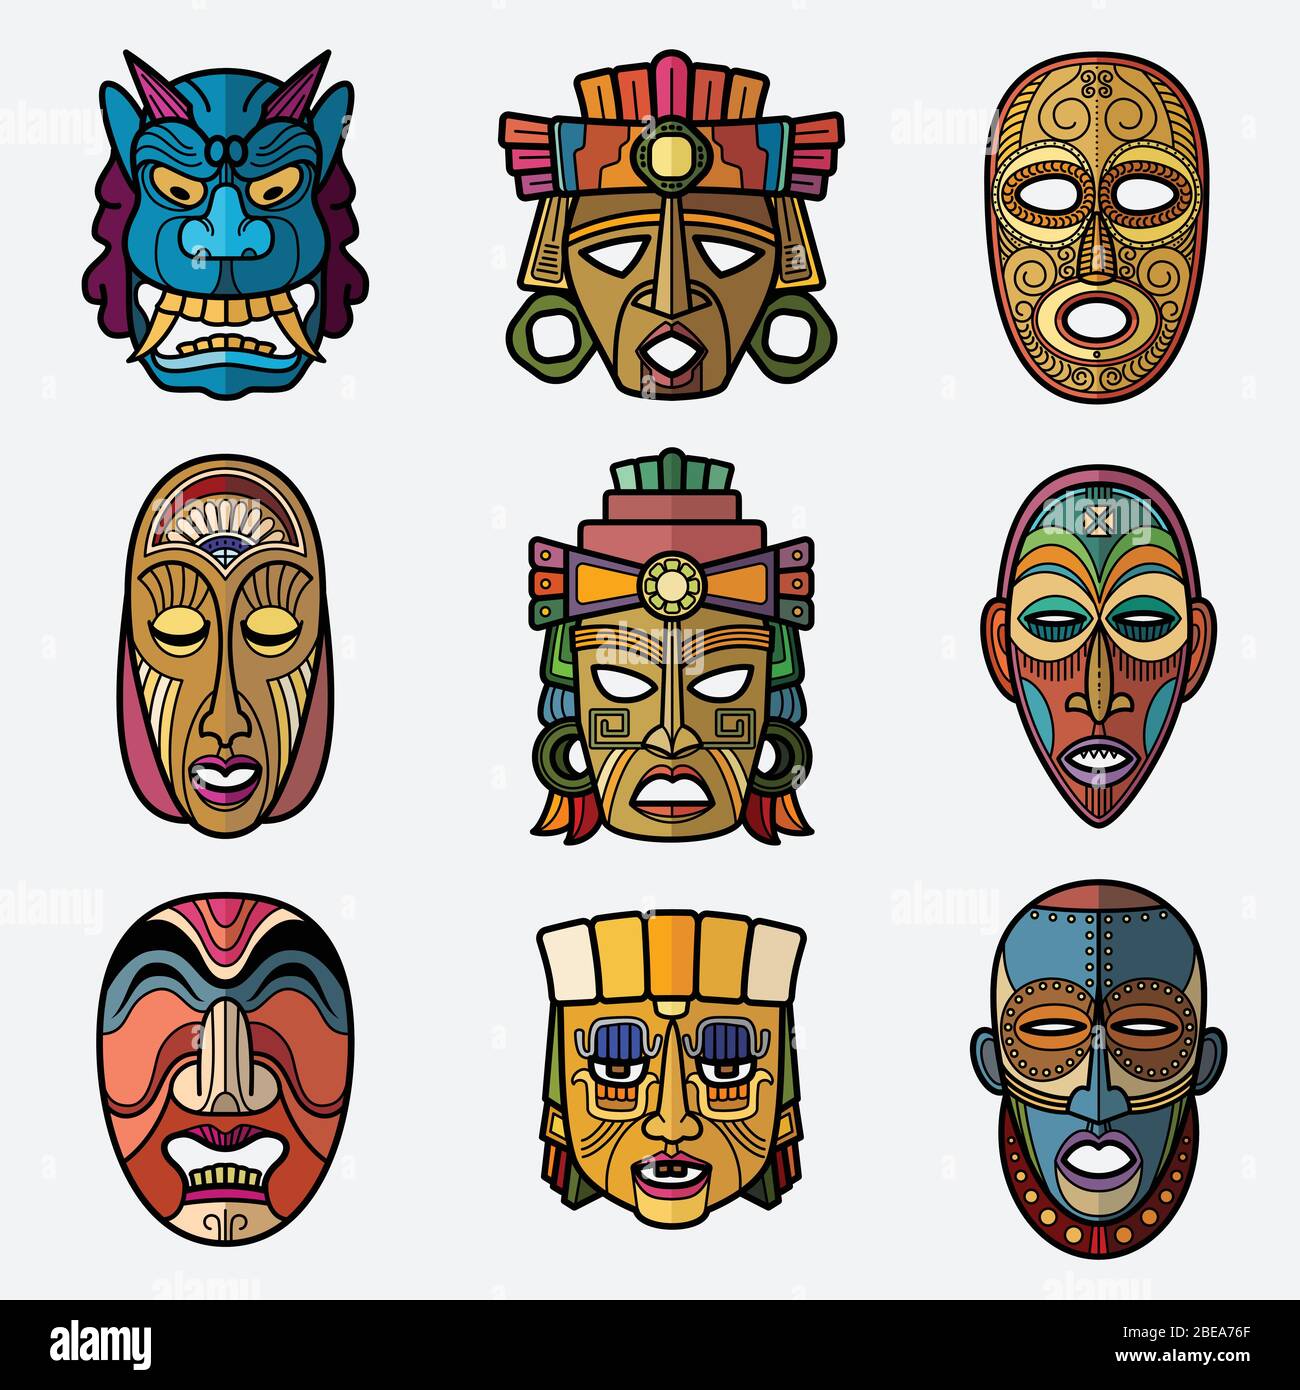 Maschera tribale voodoo artigianale africana e set di simboli totem cultura sudaamericana inca. Souvenir maschera africana, voodoo tradizionale illustrazione del viso Illustrazione Vettoriale